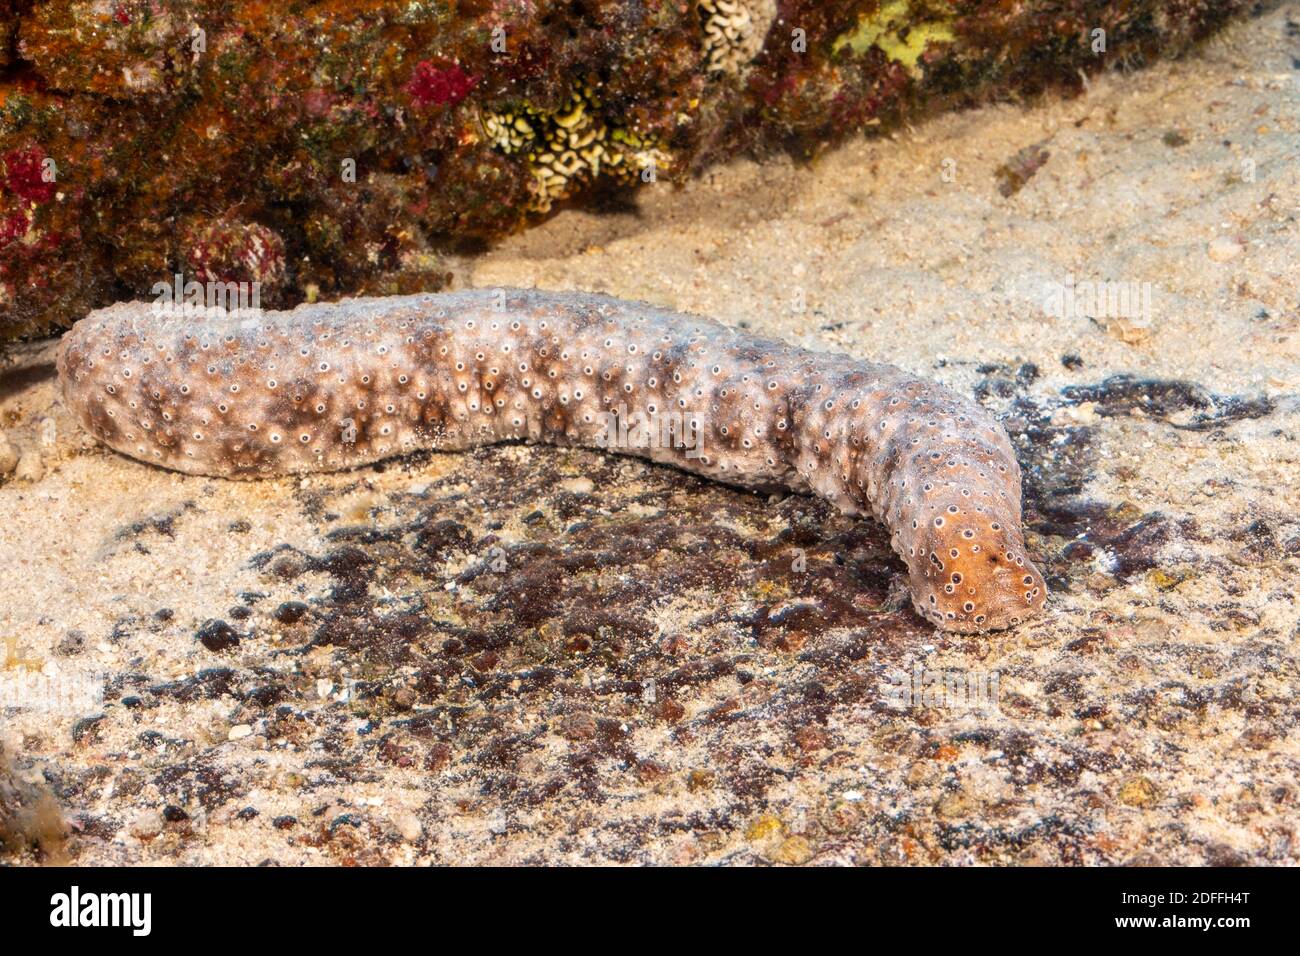 Questo cetriolo marino, Holothuria sp., deve ancora essere scientificamente identificato, Hawaii. Non è comune e si pensa sia endemico. Foto Stock